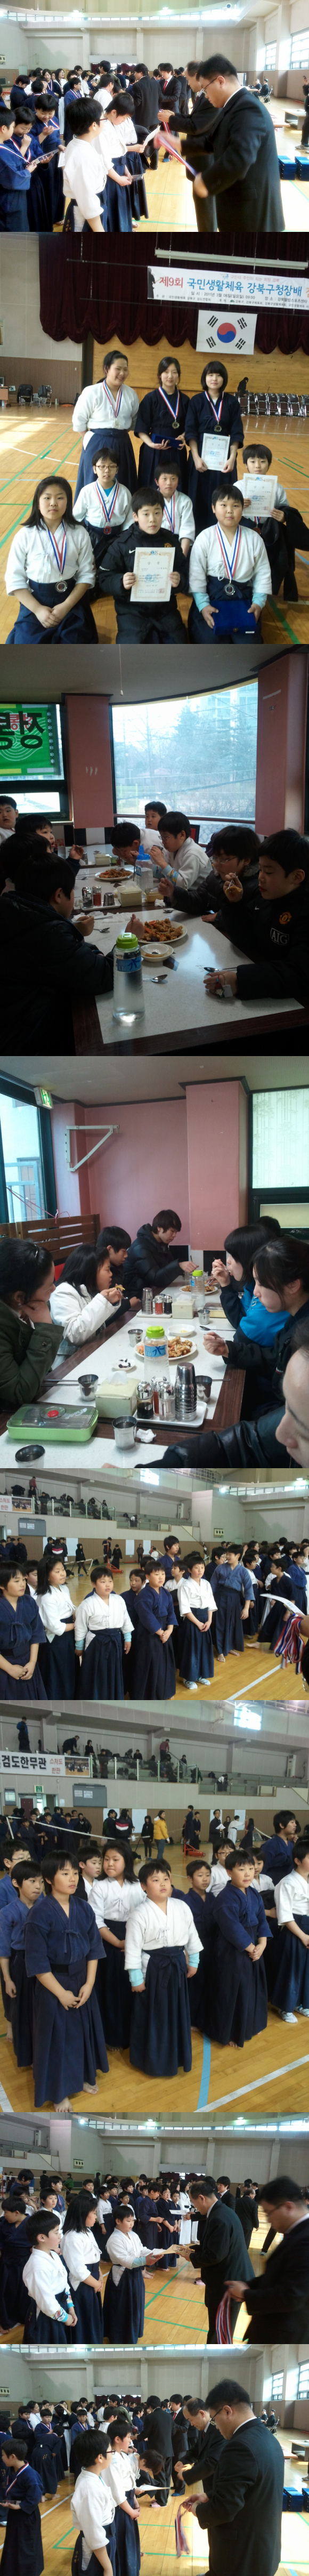 2011.3.6. 강북구청장기 검도대회 입상및 식사.jpg